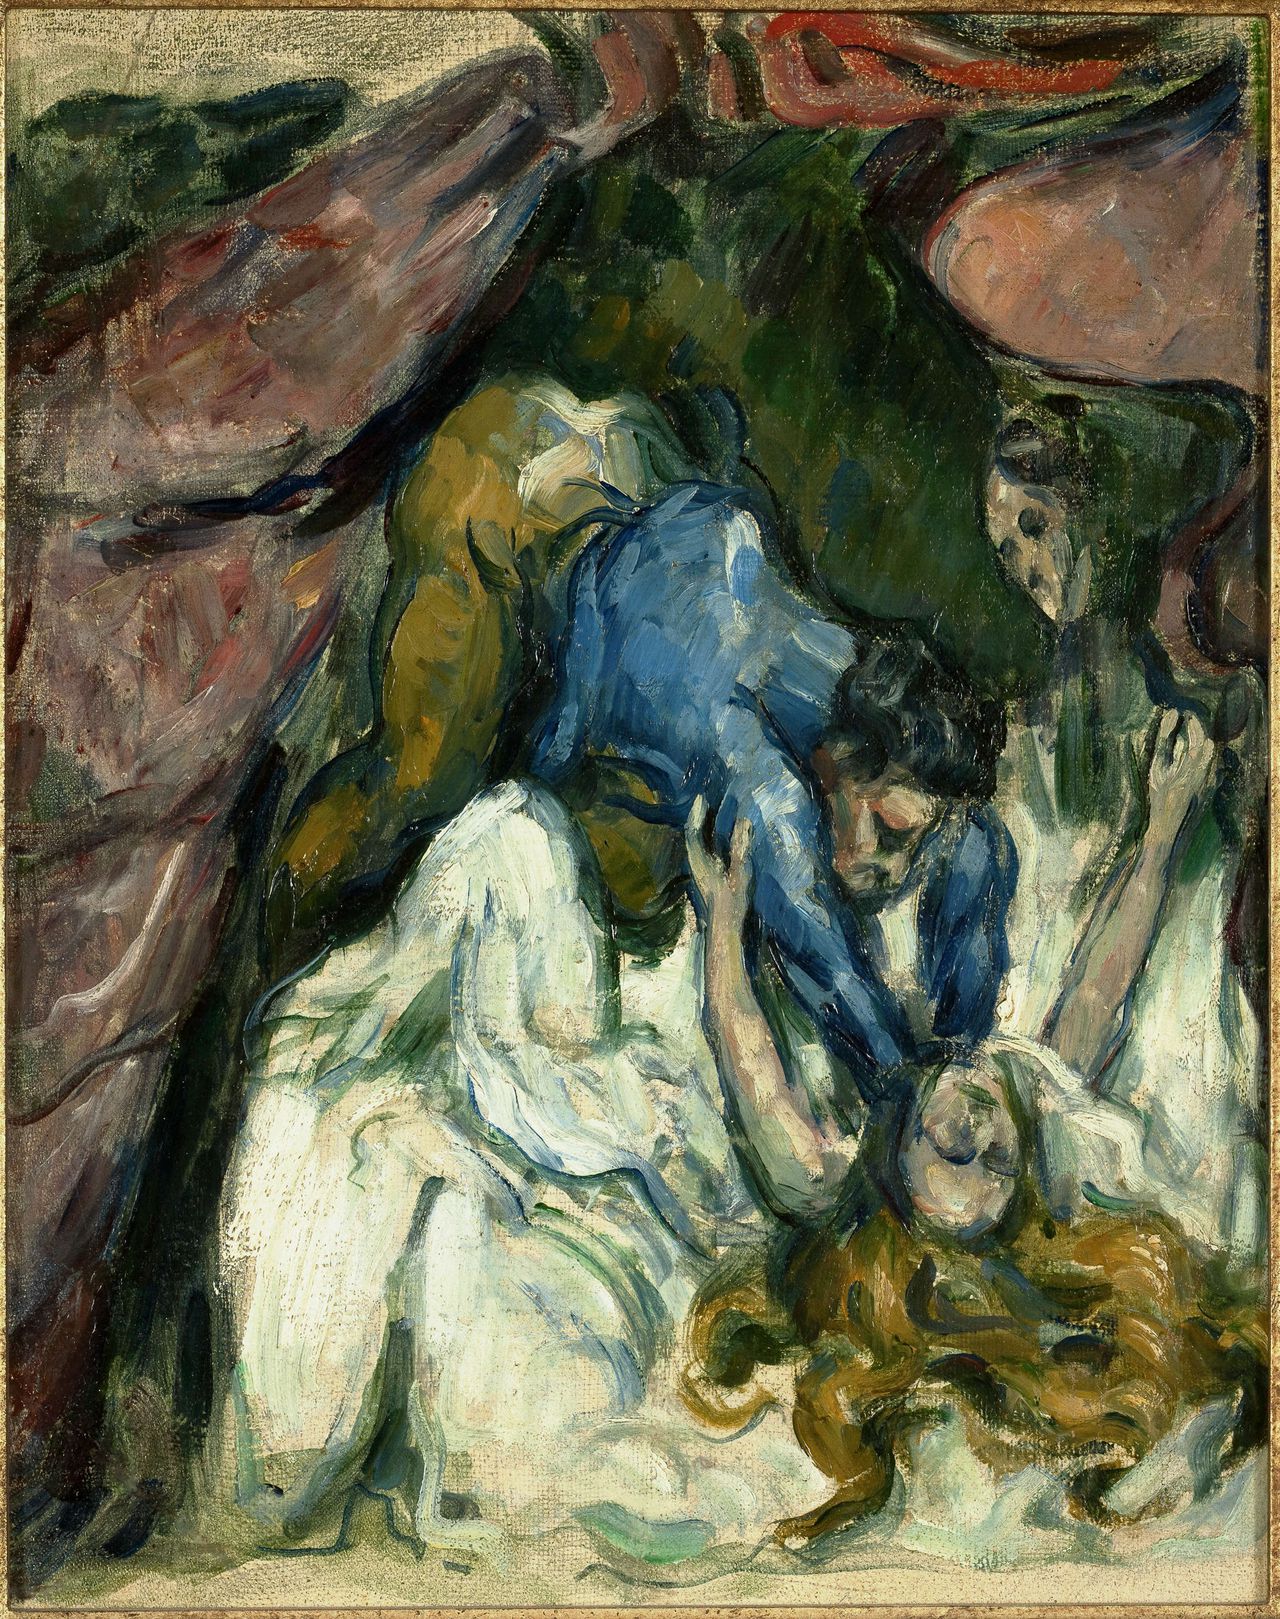 Paul Cézanne, La Femme étranglée, 1875/1876. Olieverf op doek, 31×25 cm.